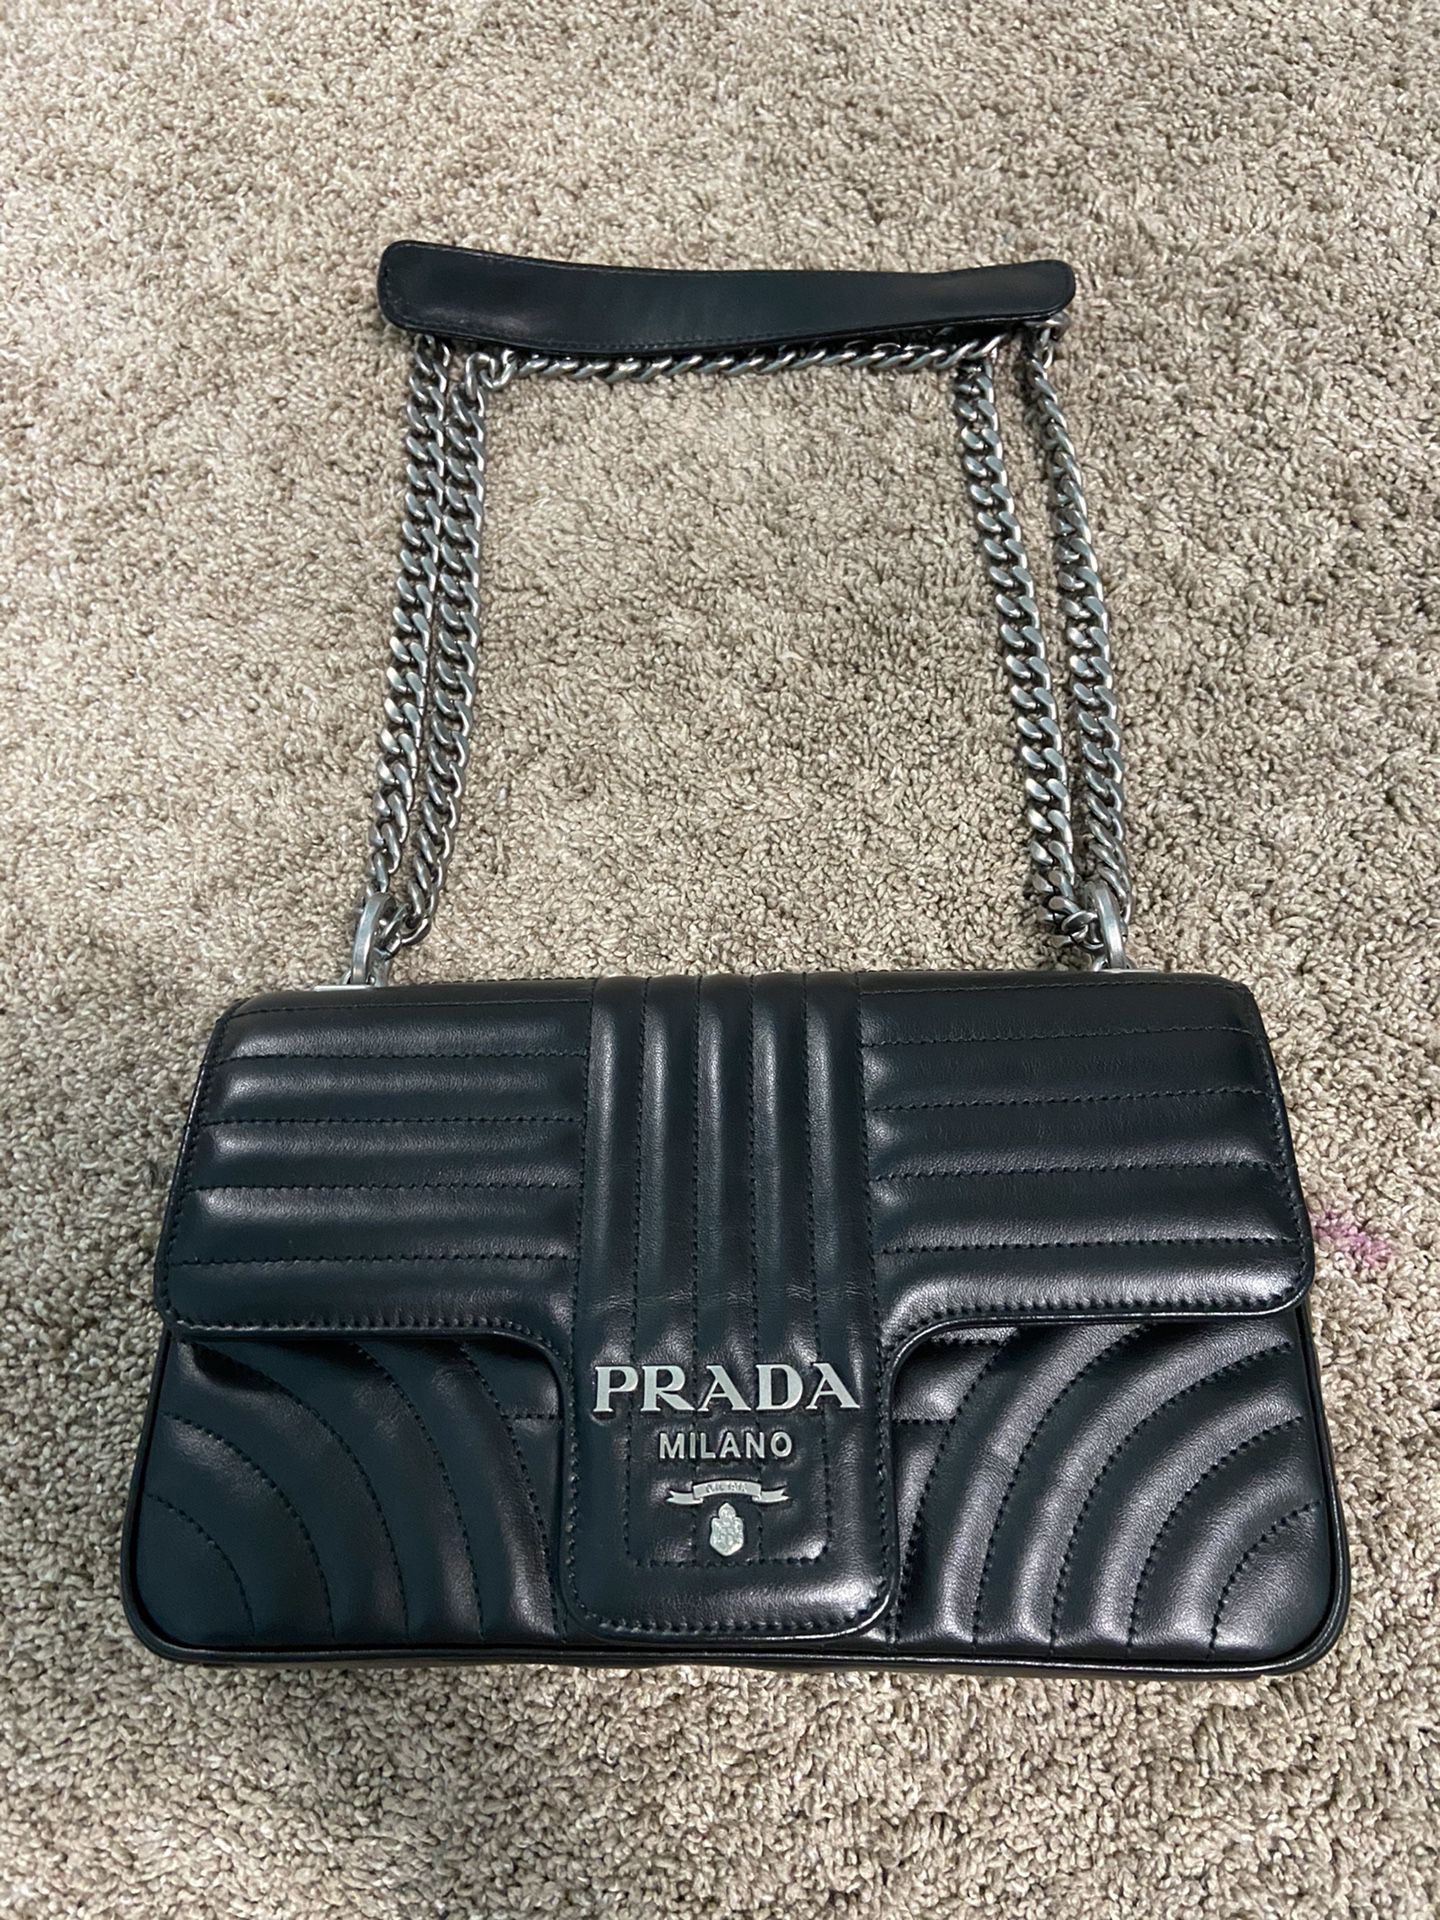 Prada Milano Large leather Prada Diagram Bag